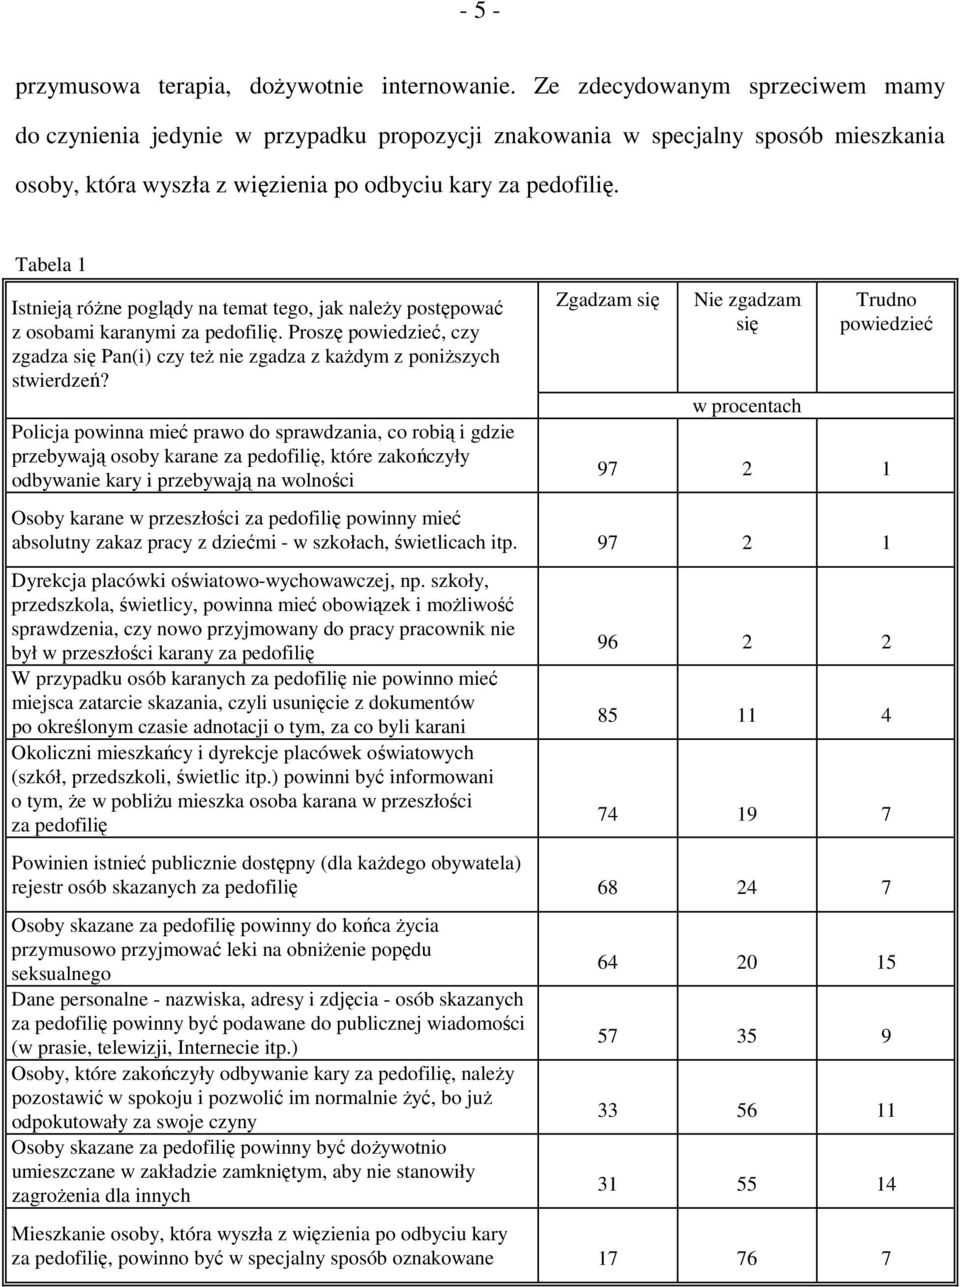 Tabela 1 Istnieją różne poglądy na temat tego, jak należy postępować z osobami karanymi za pedofilię. Proszę powiedzieć, czy zgadza się Pan(i) czy też nie zgadza z każdym z poniższych stwierdzeń?